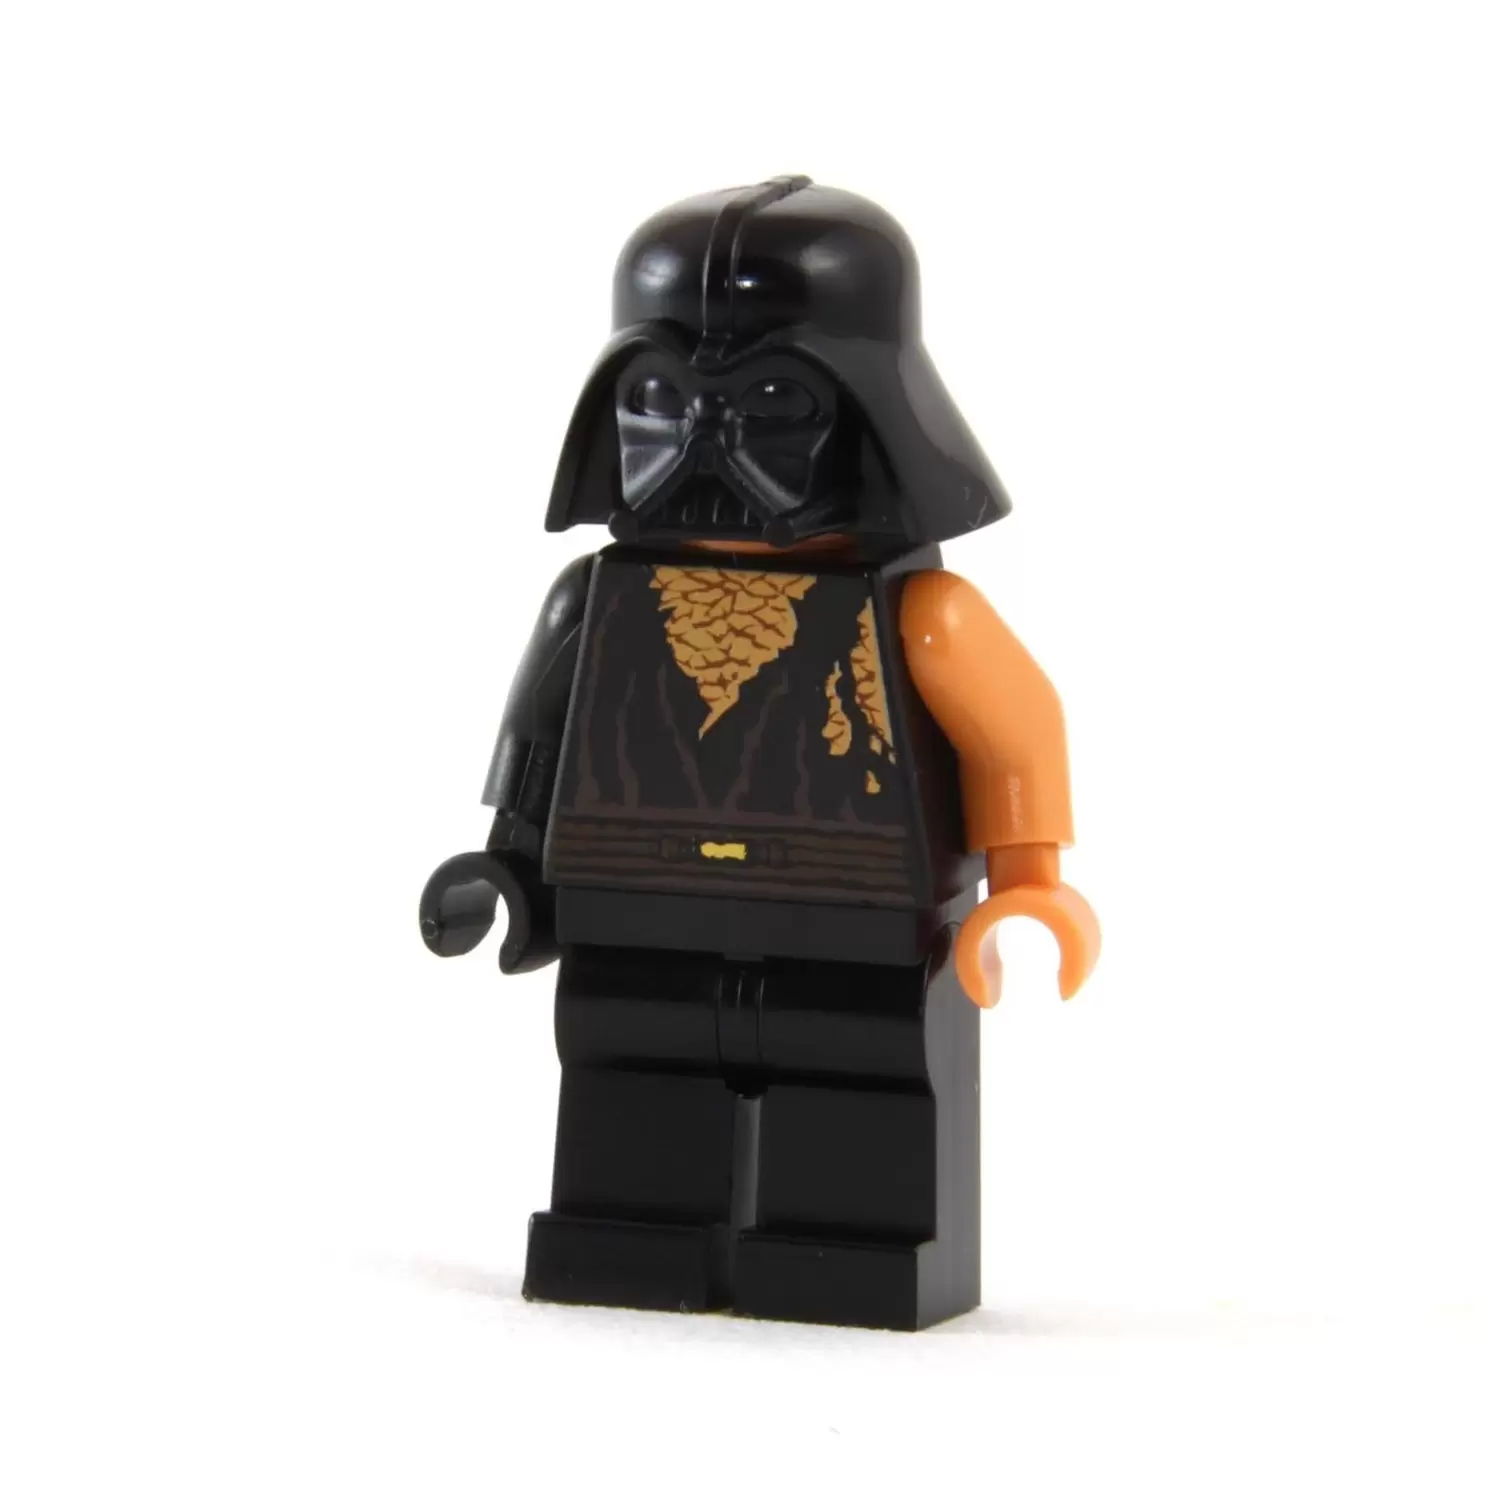 LEGO Star Wars Minifigs - Anakin Skywalker (Battle Damaged) with Darth Vader Helmet